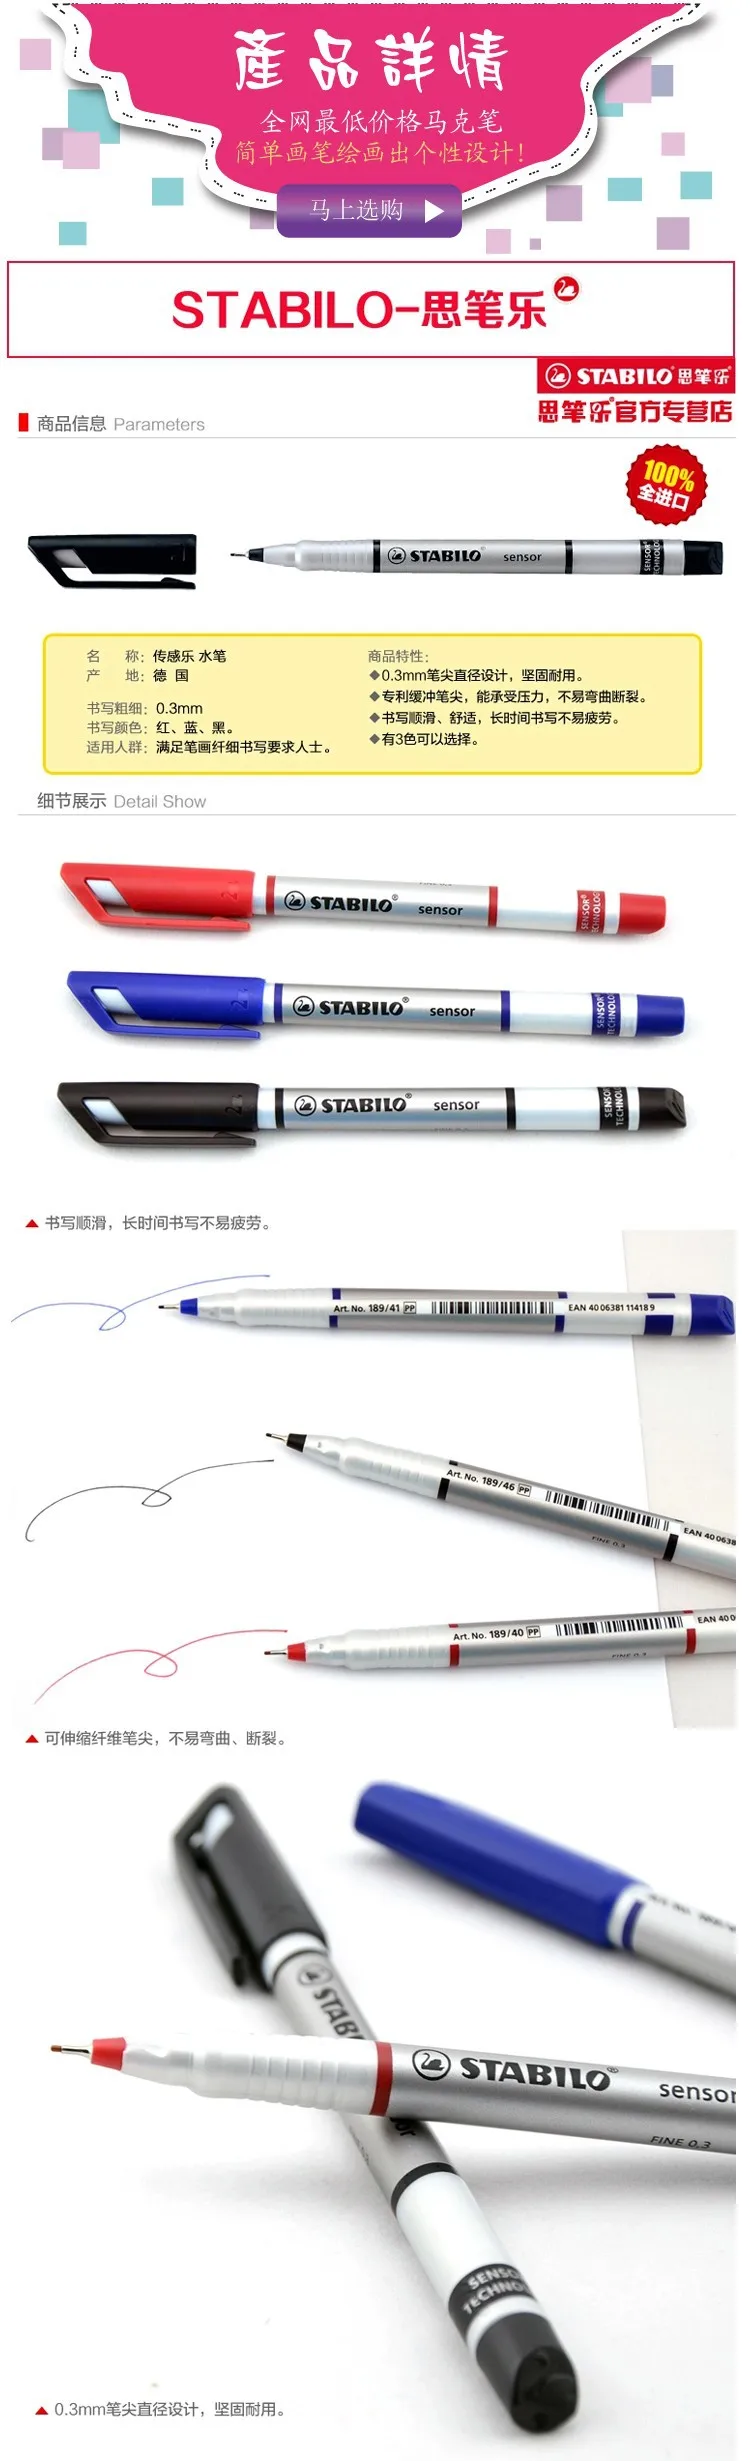 Германия STABILO 189 гелевая ручка крюк линия ручка 0,3 мм Сверхтонкий Гладкий 3 цвета